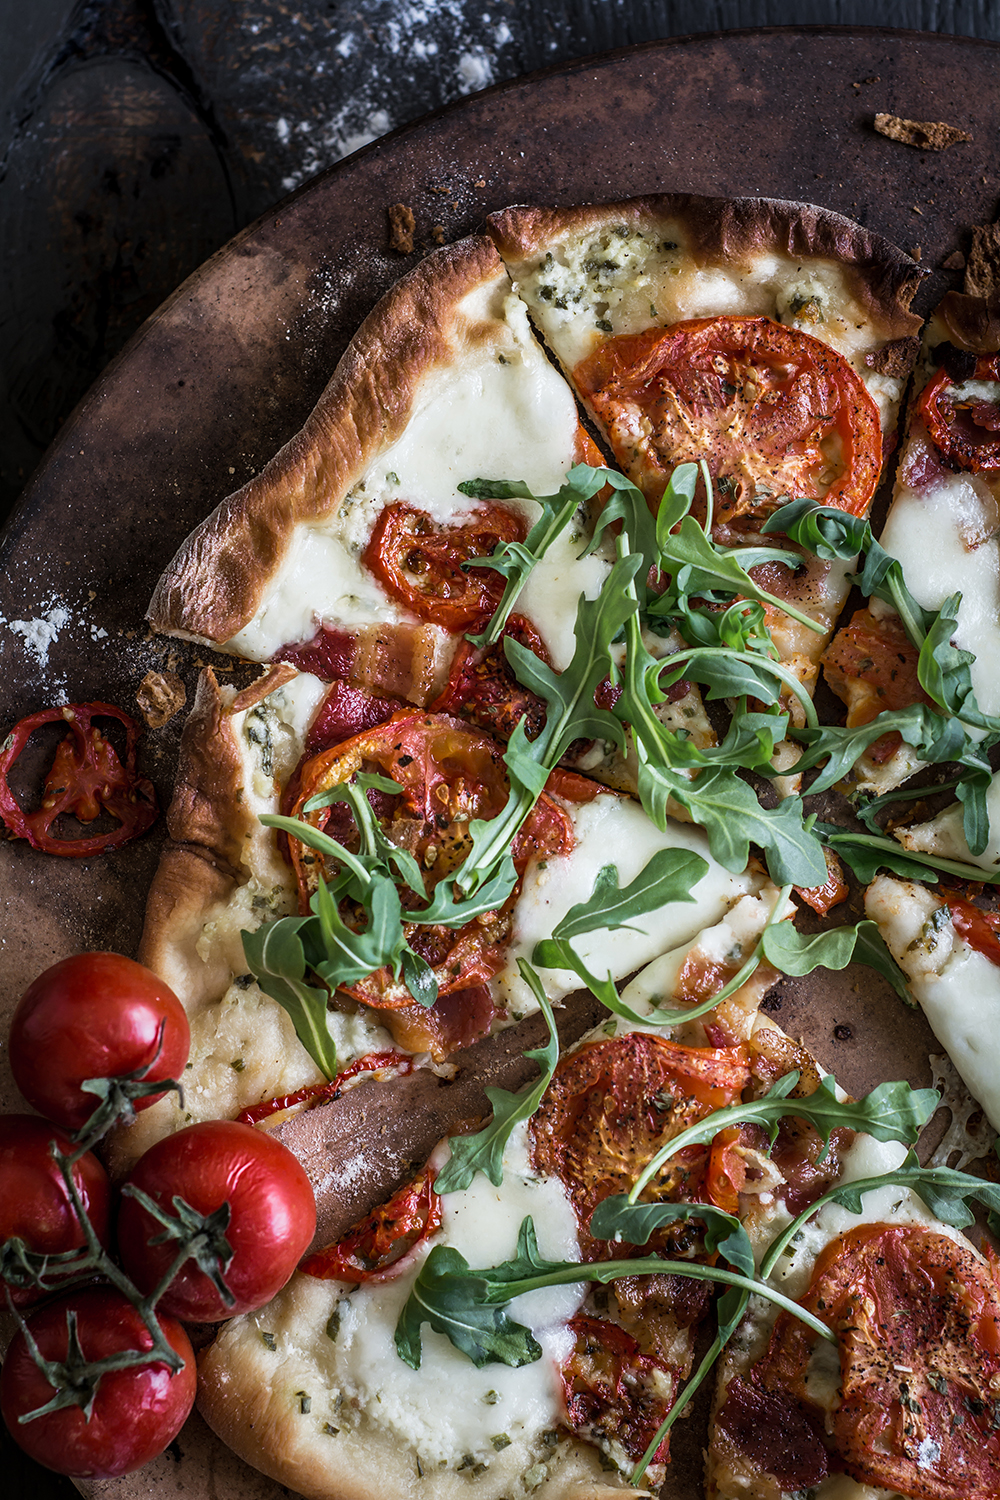 SEVEN UNIQUE PIZZA RECIPES TO MAKE AT HOME